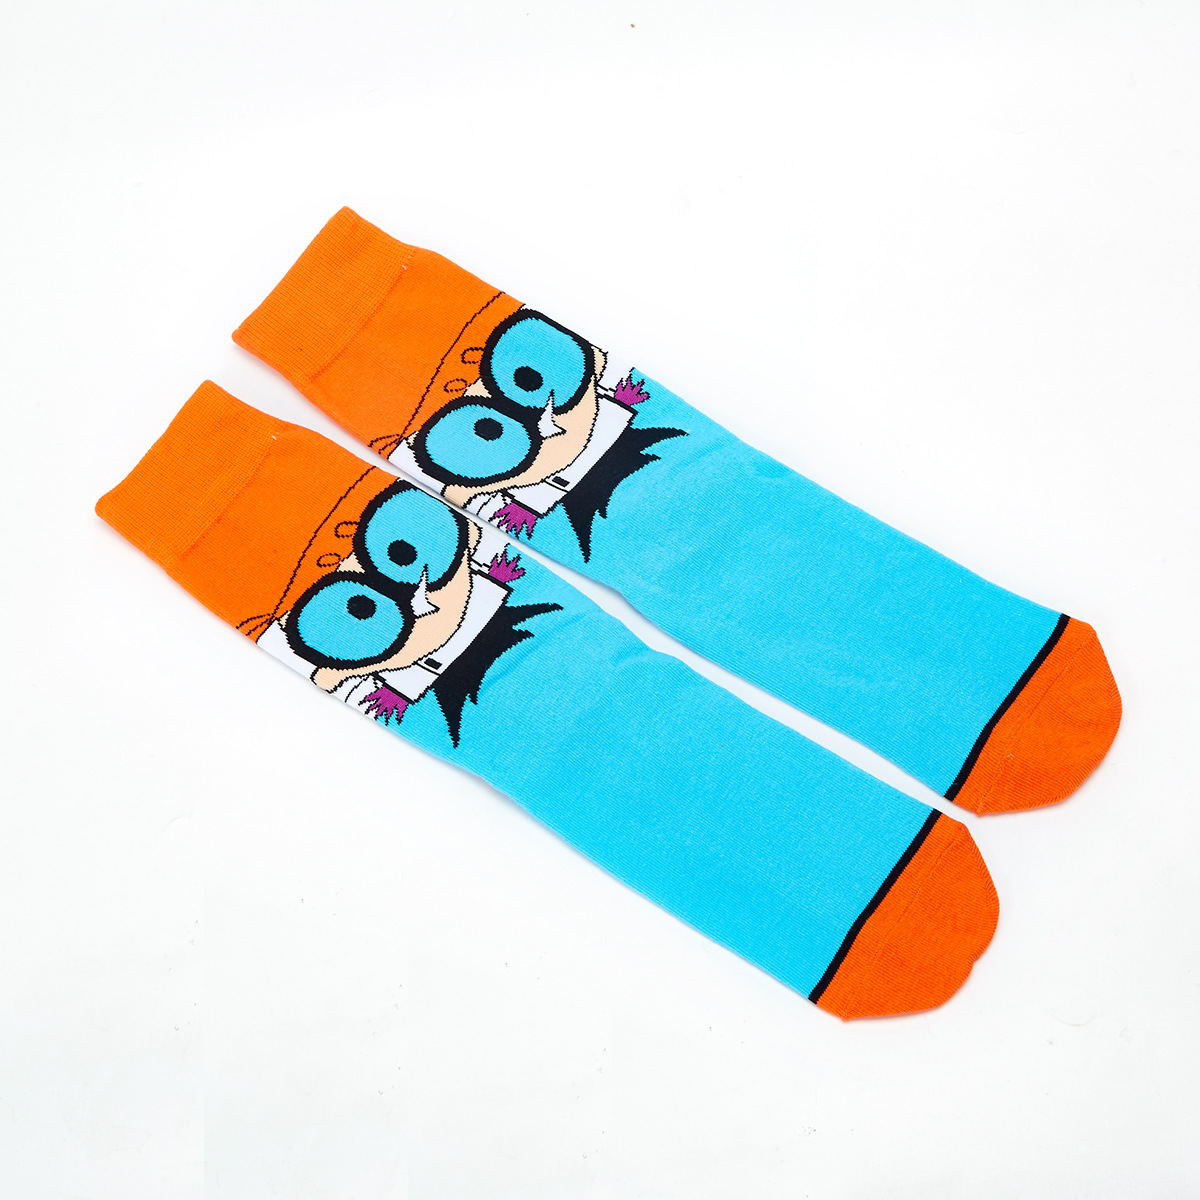 Lote de 5 pares de calcetines de Anime para niños, calcetines divertidos  para niños, calcetines deportivos de algodón – Los mejores productos en la  tienda online Joom Geek